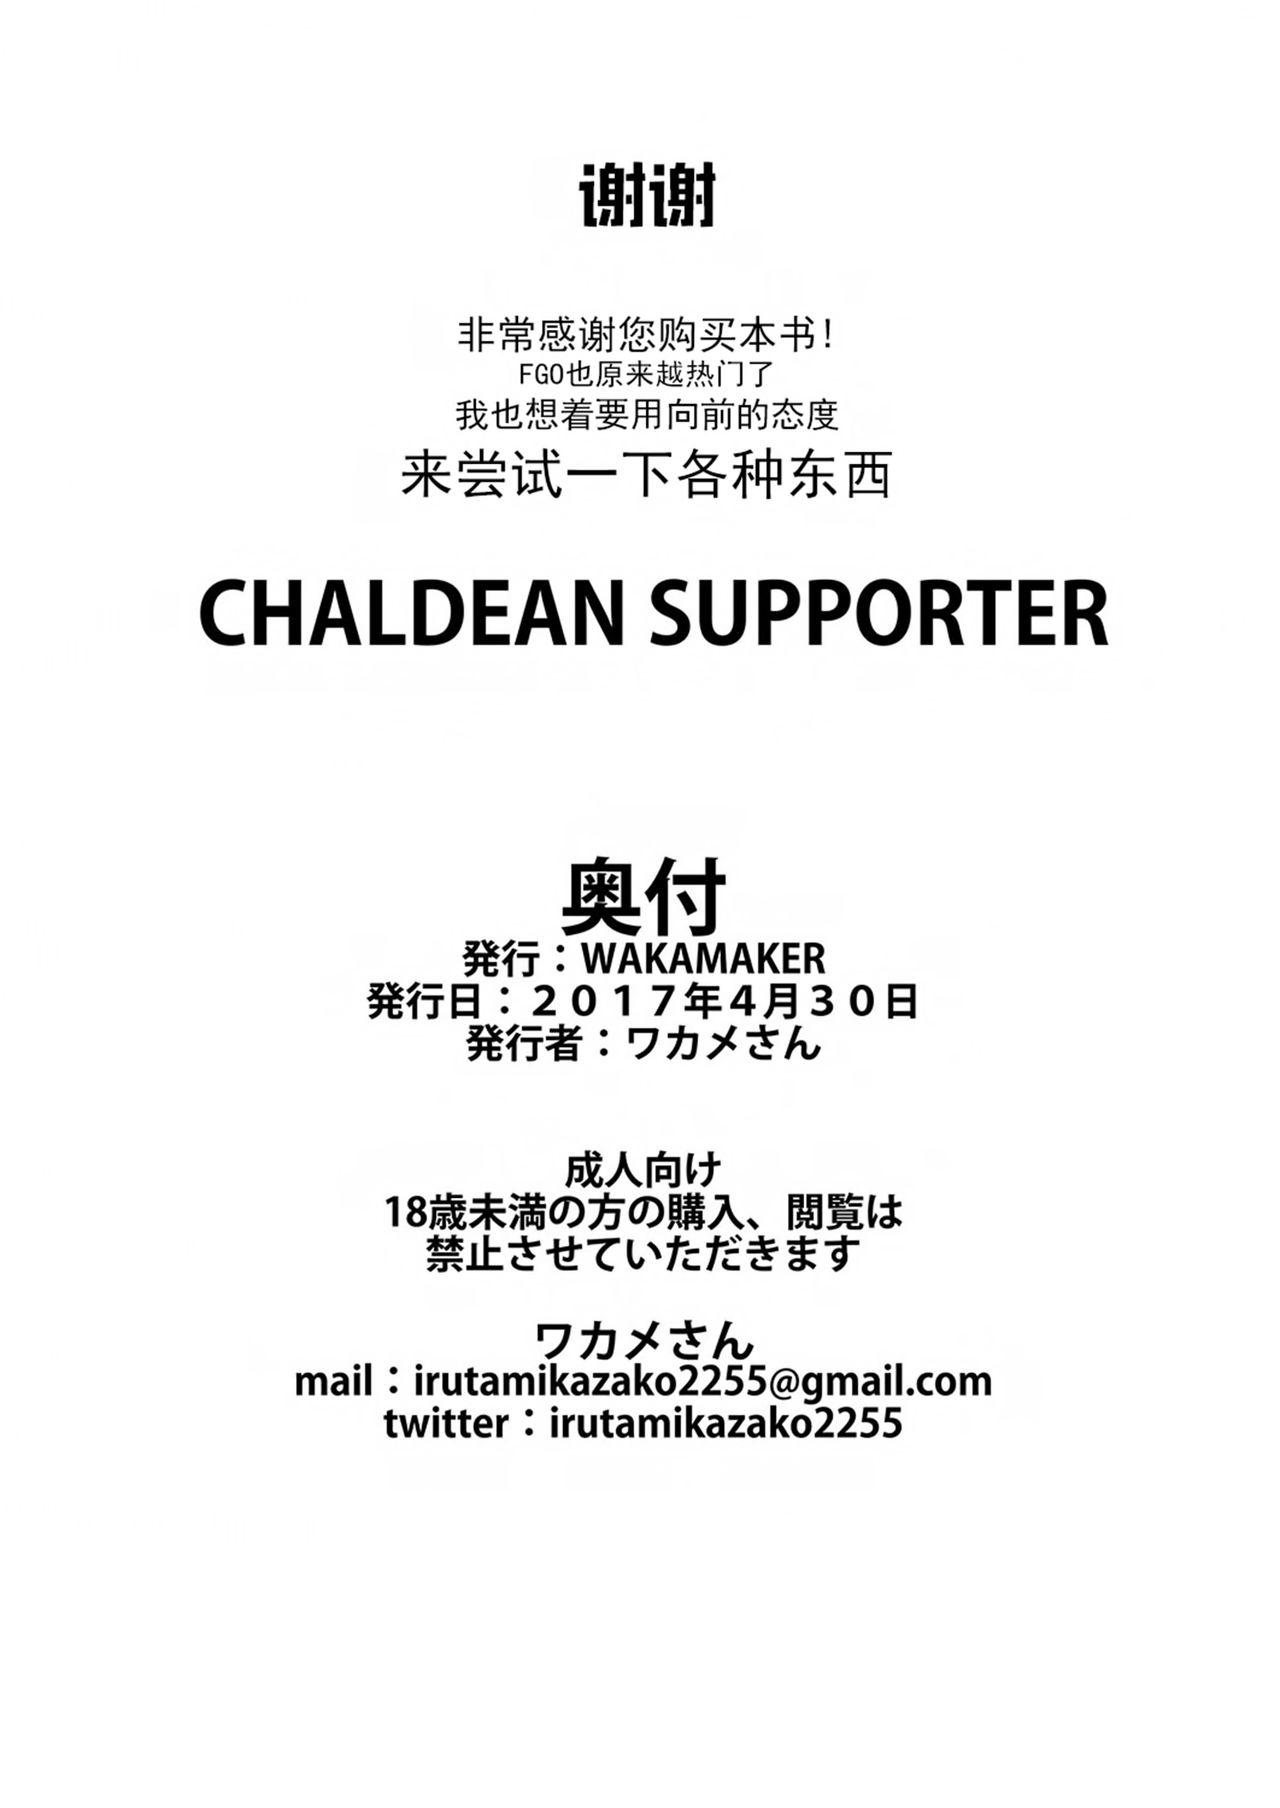 CHALDEAN SUPPORTER 21